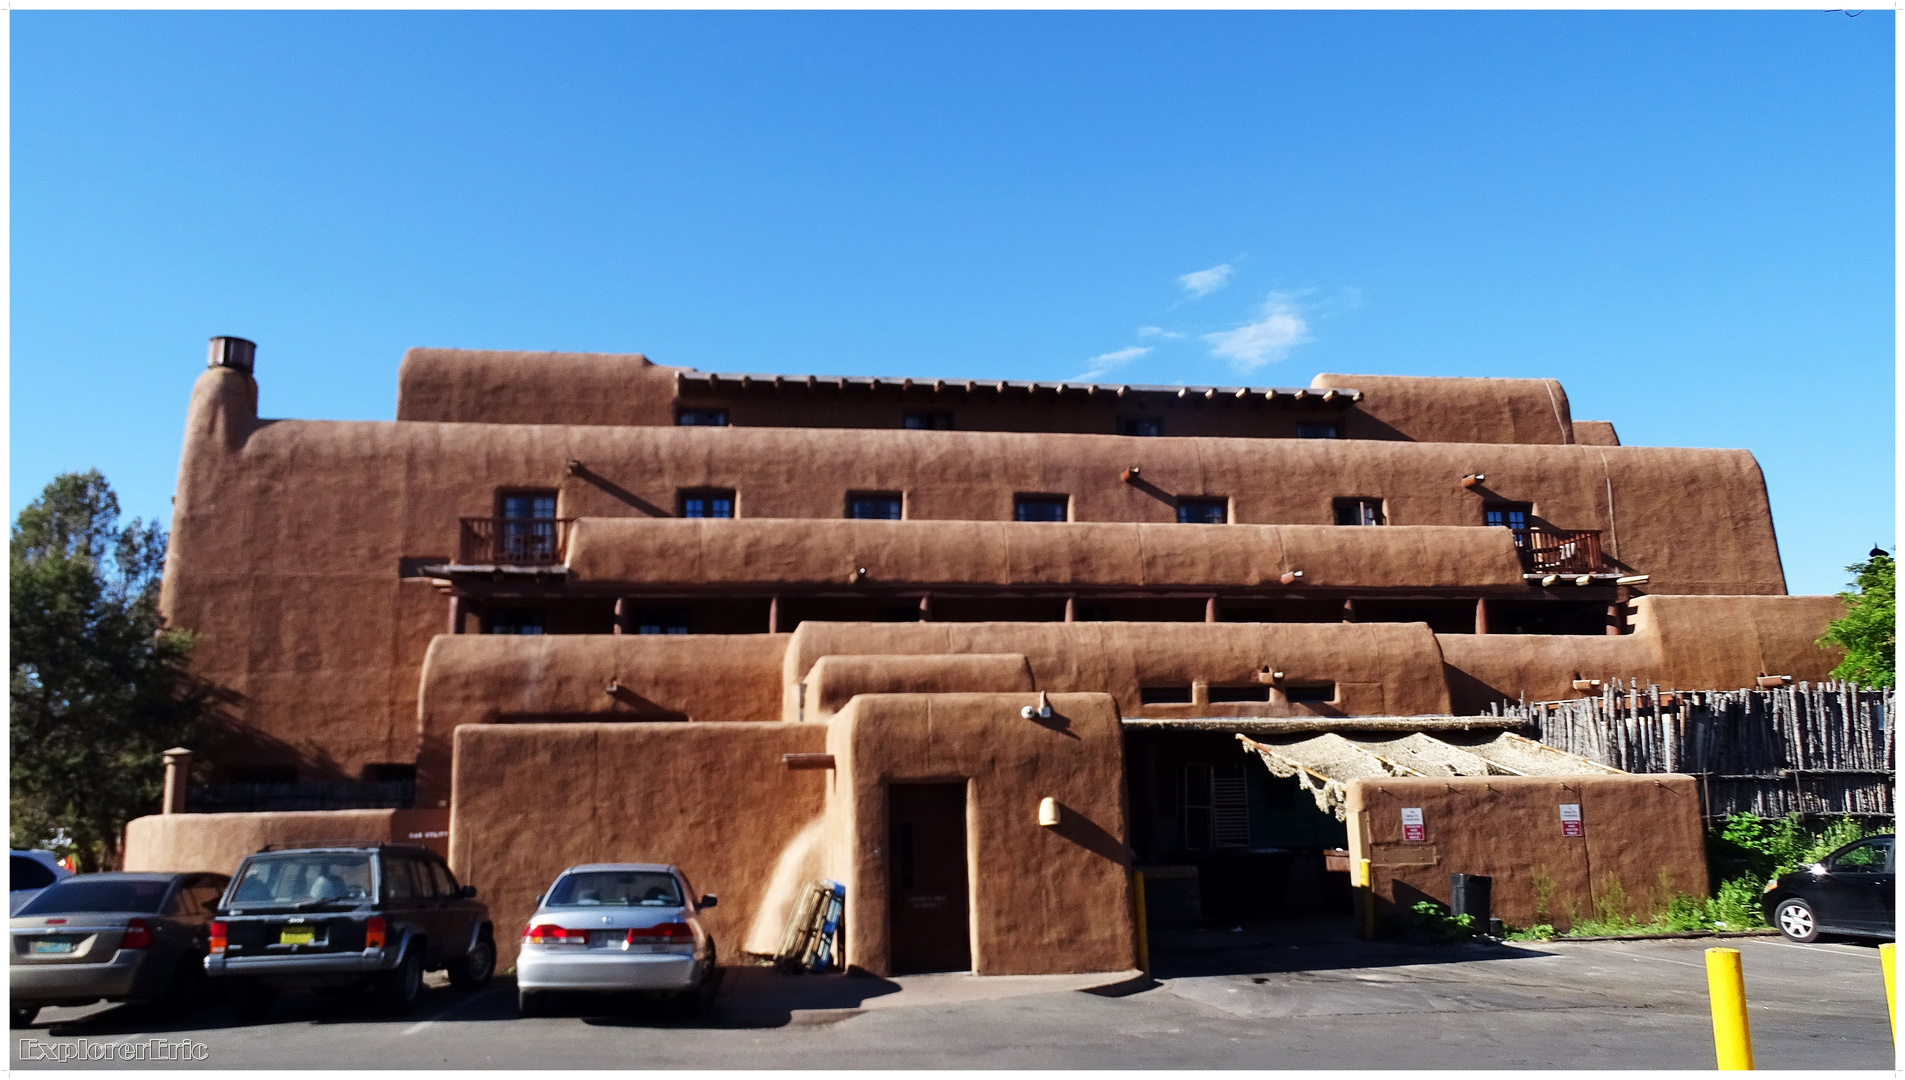  Adobe Architektur in Santa Fe